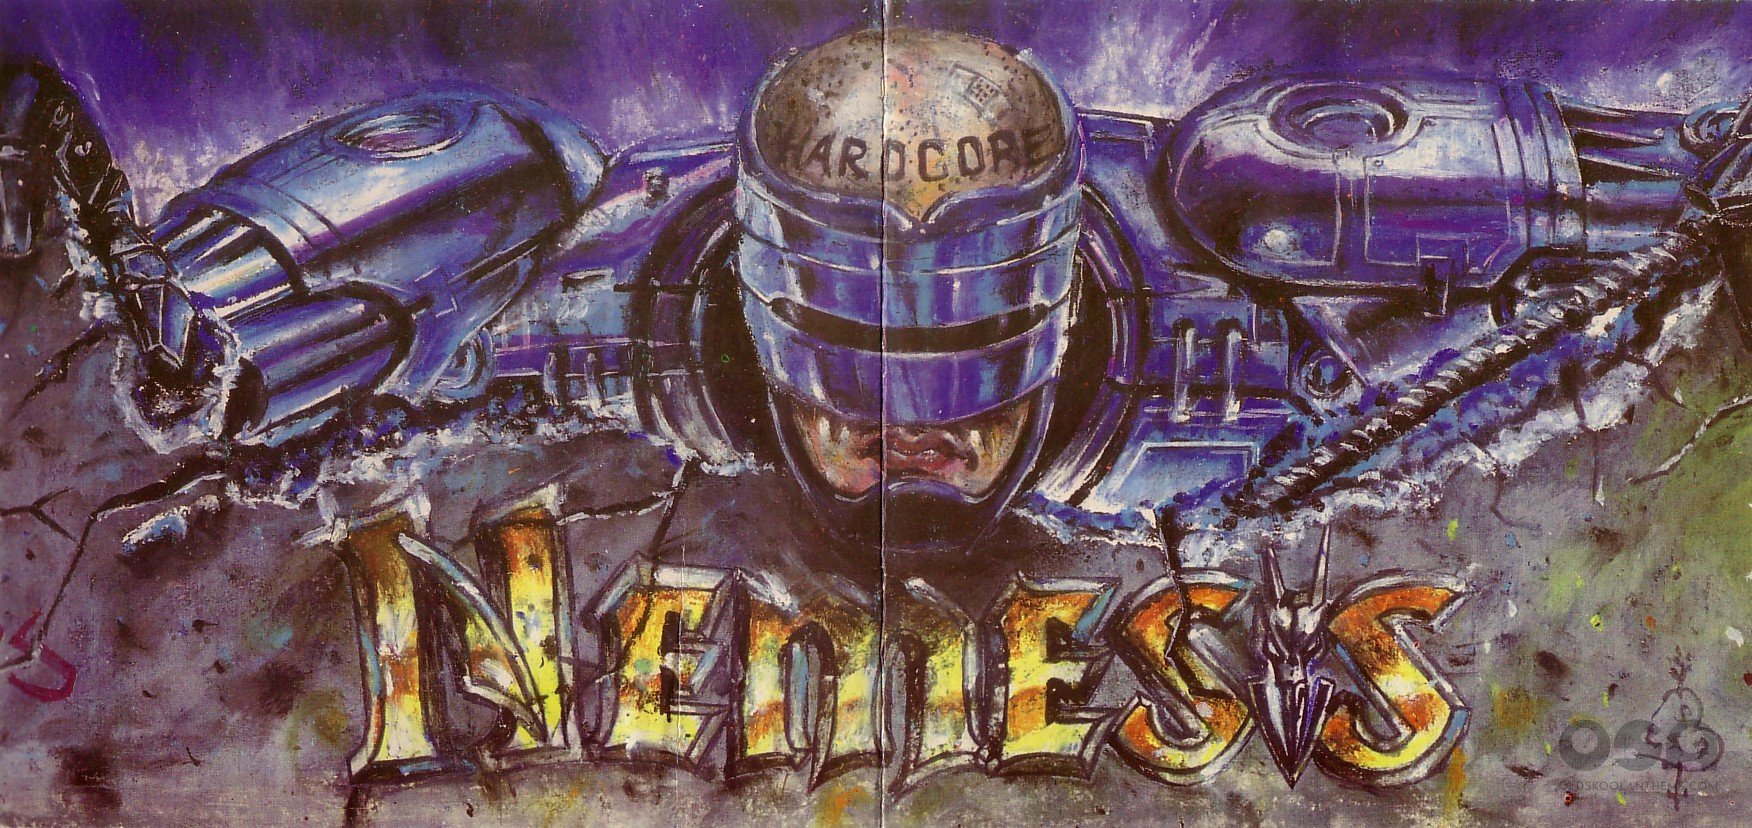 1_Nemesis_The_Hardcore_Concept_Donnington_Park_13_July_1991.jpg